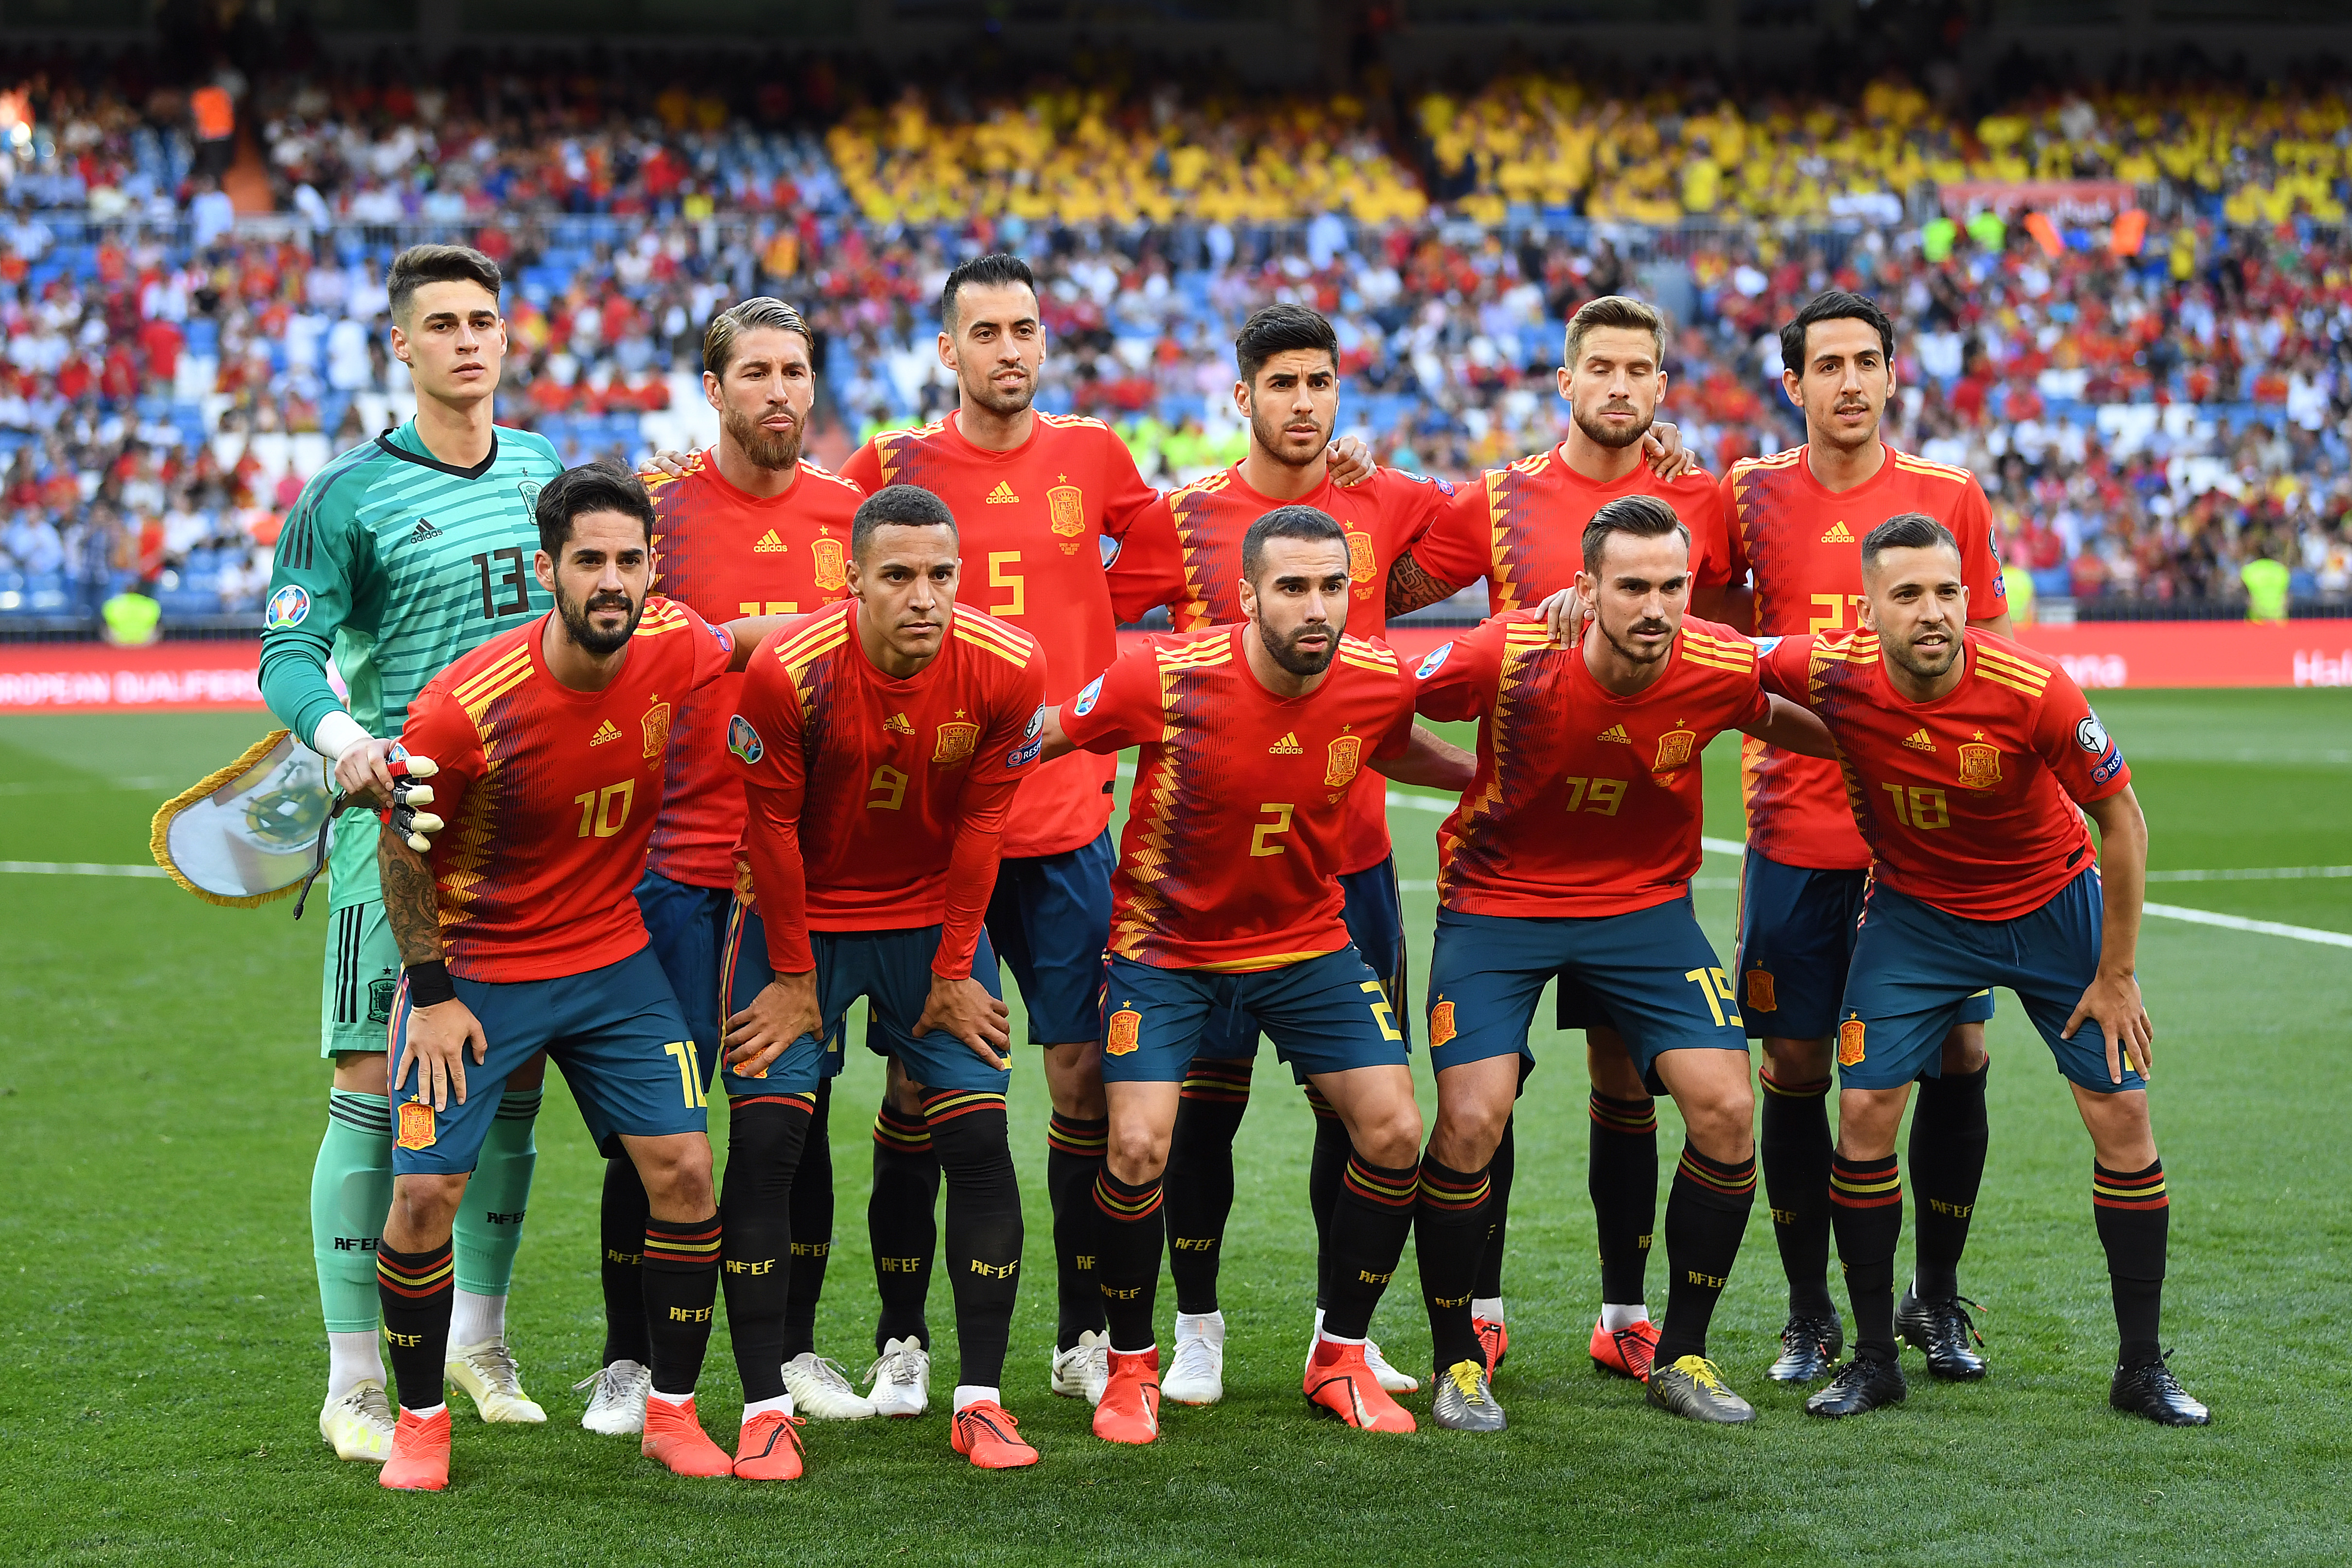 La de Selección de España: vuelve a jugar y qué partidos habrá en septiembre | Fútbol-Addict